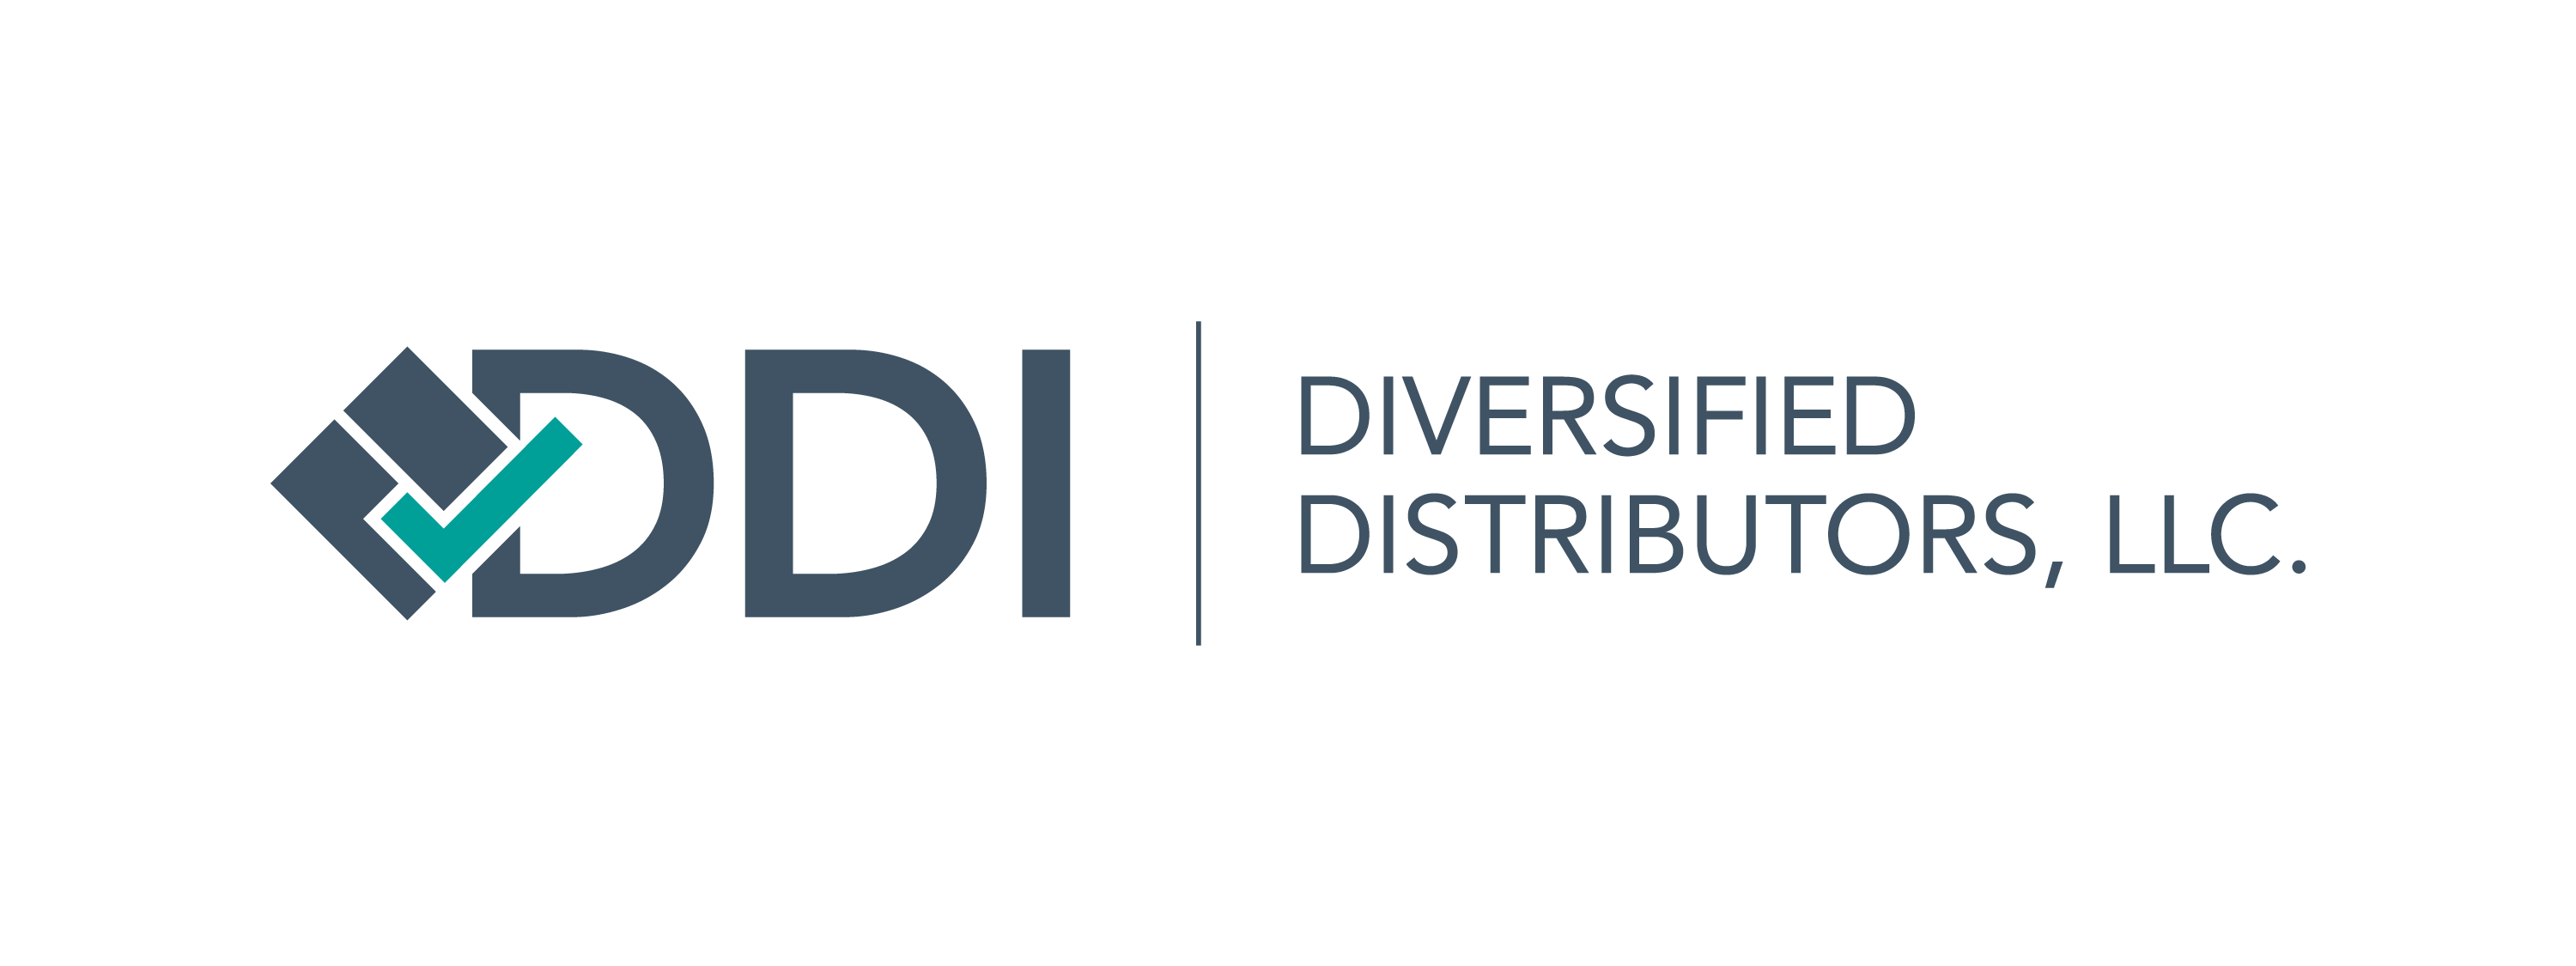 New DDI logo